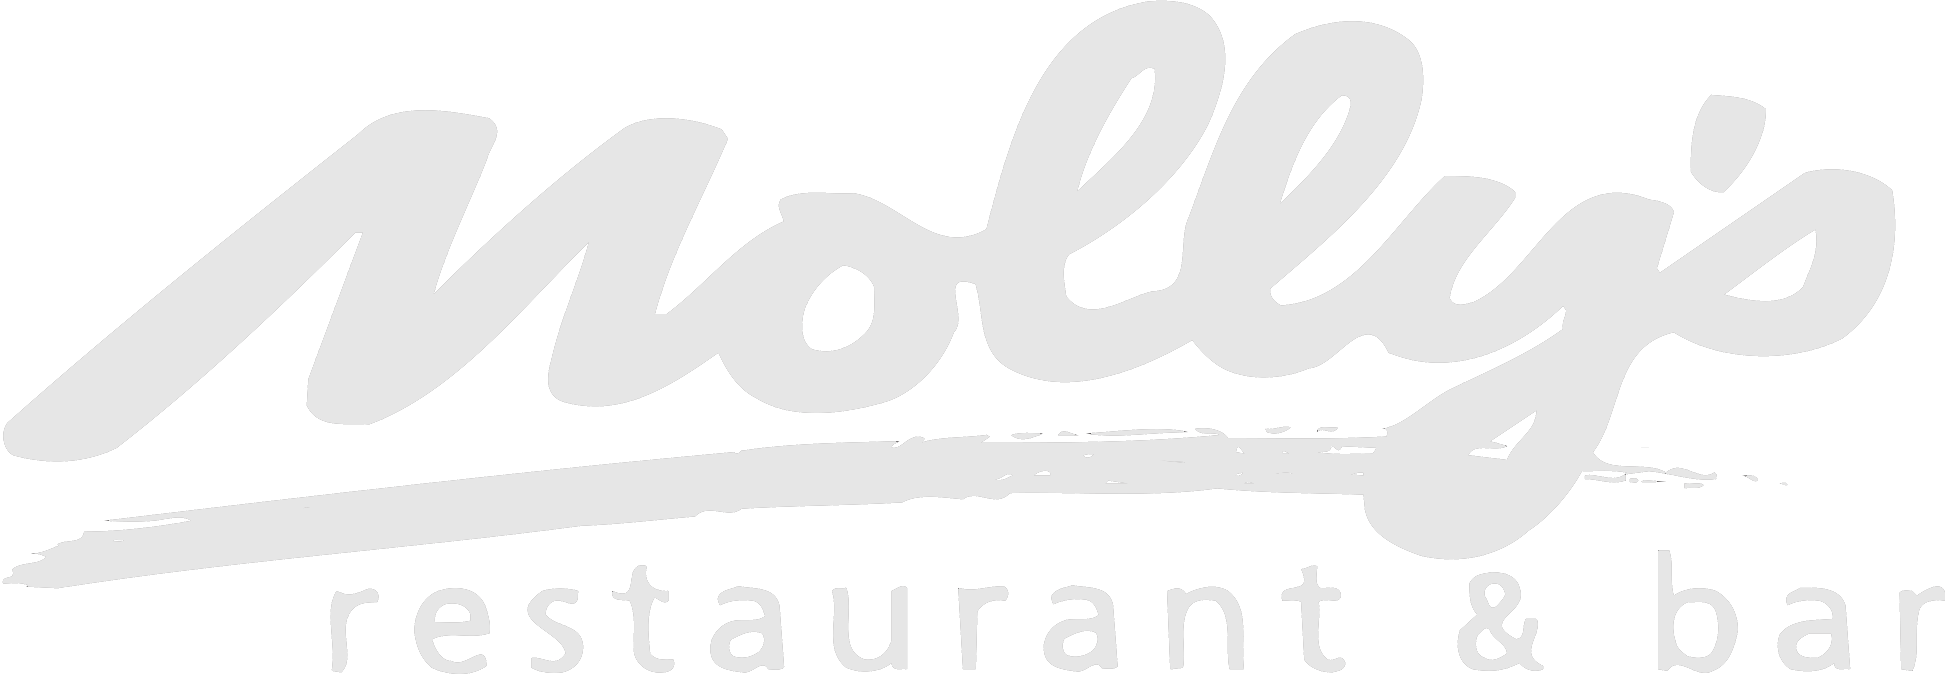 Molly's Restaurant & Bar logo